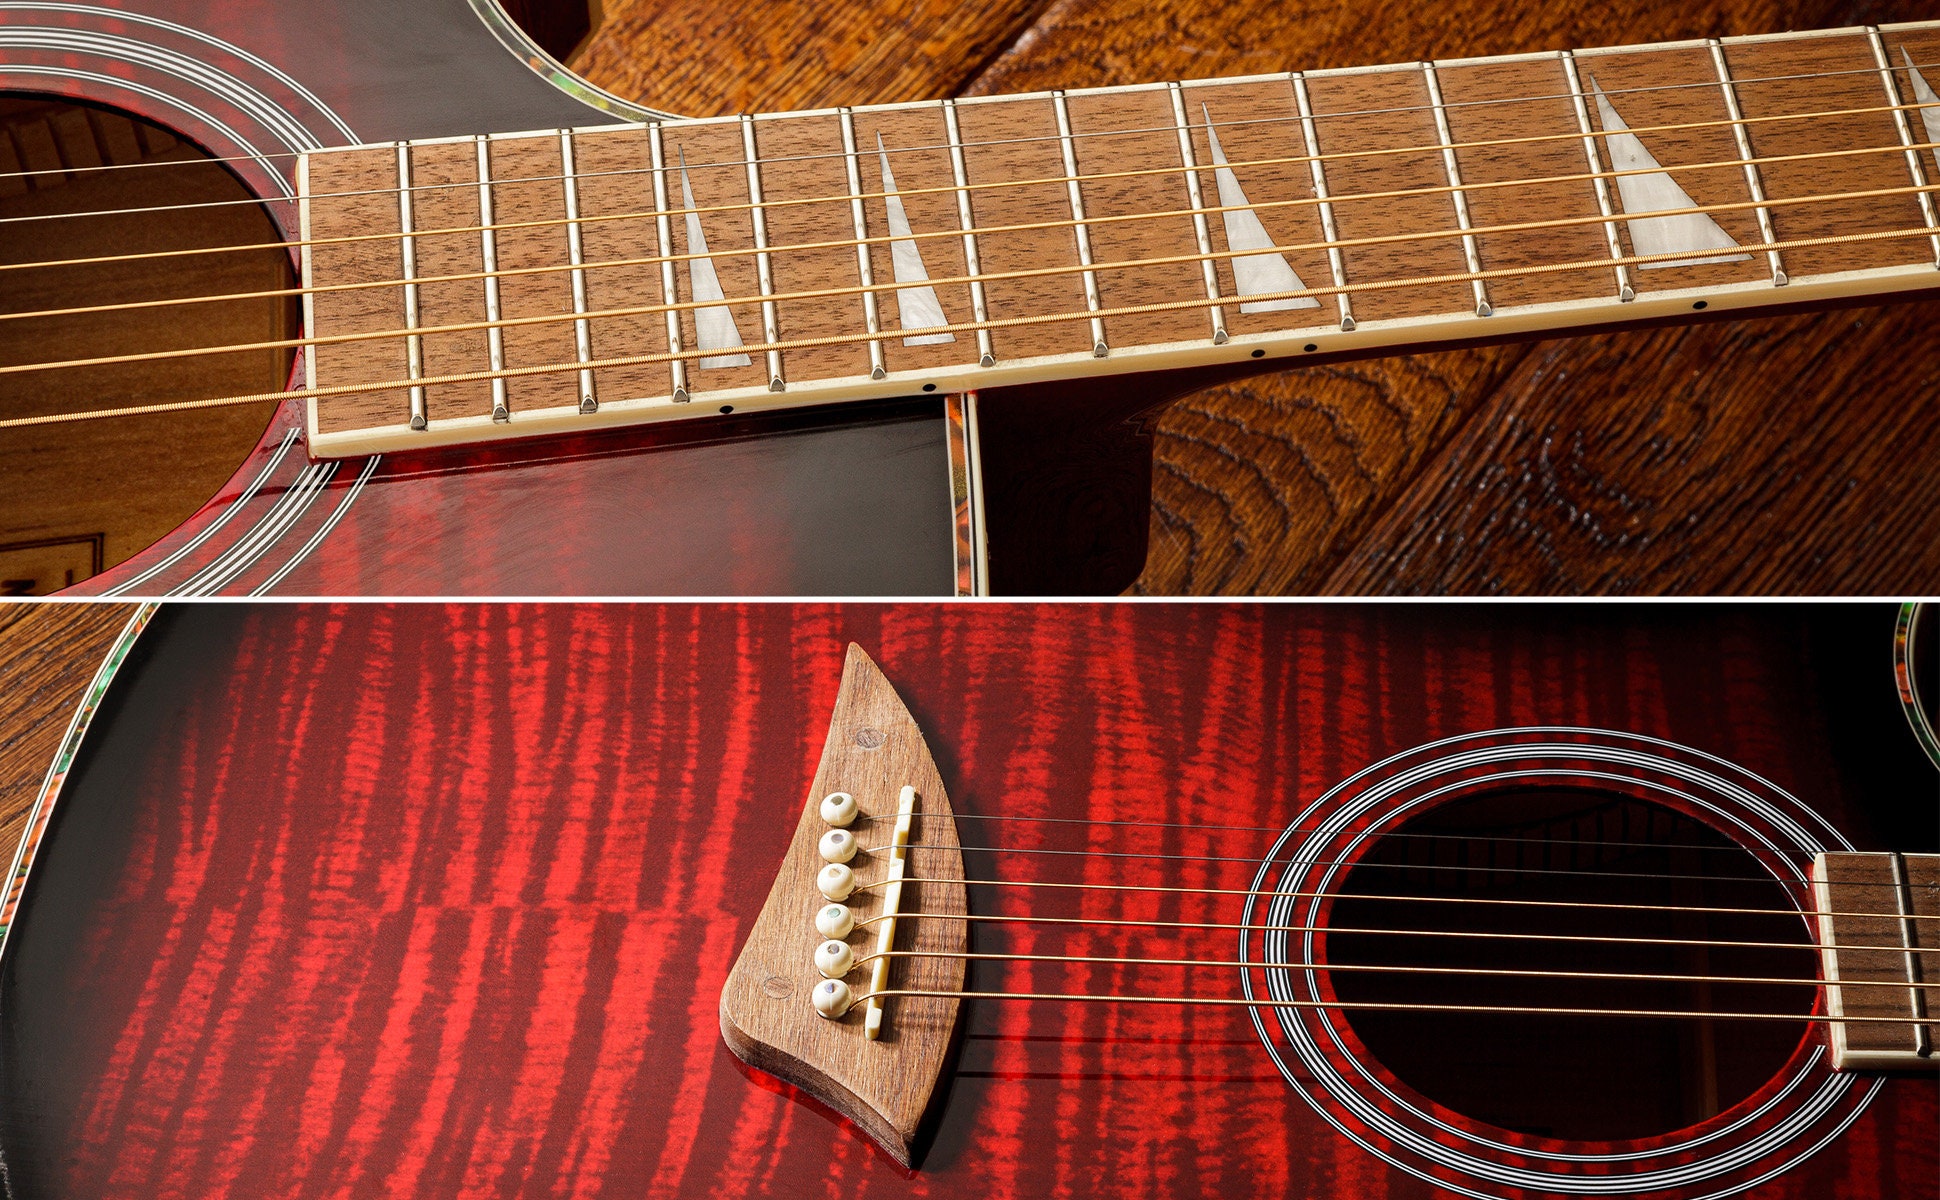 Lindo B-STOCK Guitare électroacoustique rose pissenlit pour gaucher avec  préampli BS5M et housse imperfections esthétiques mineures -  Canada